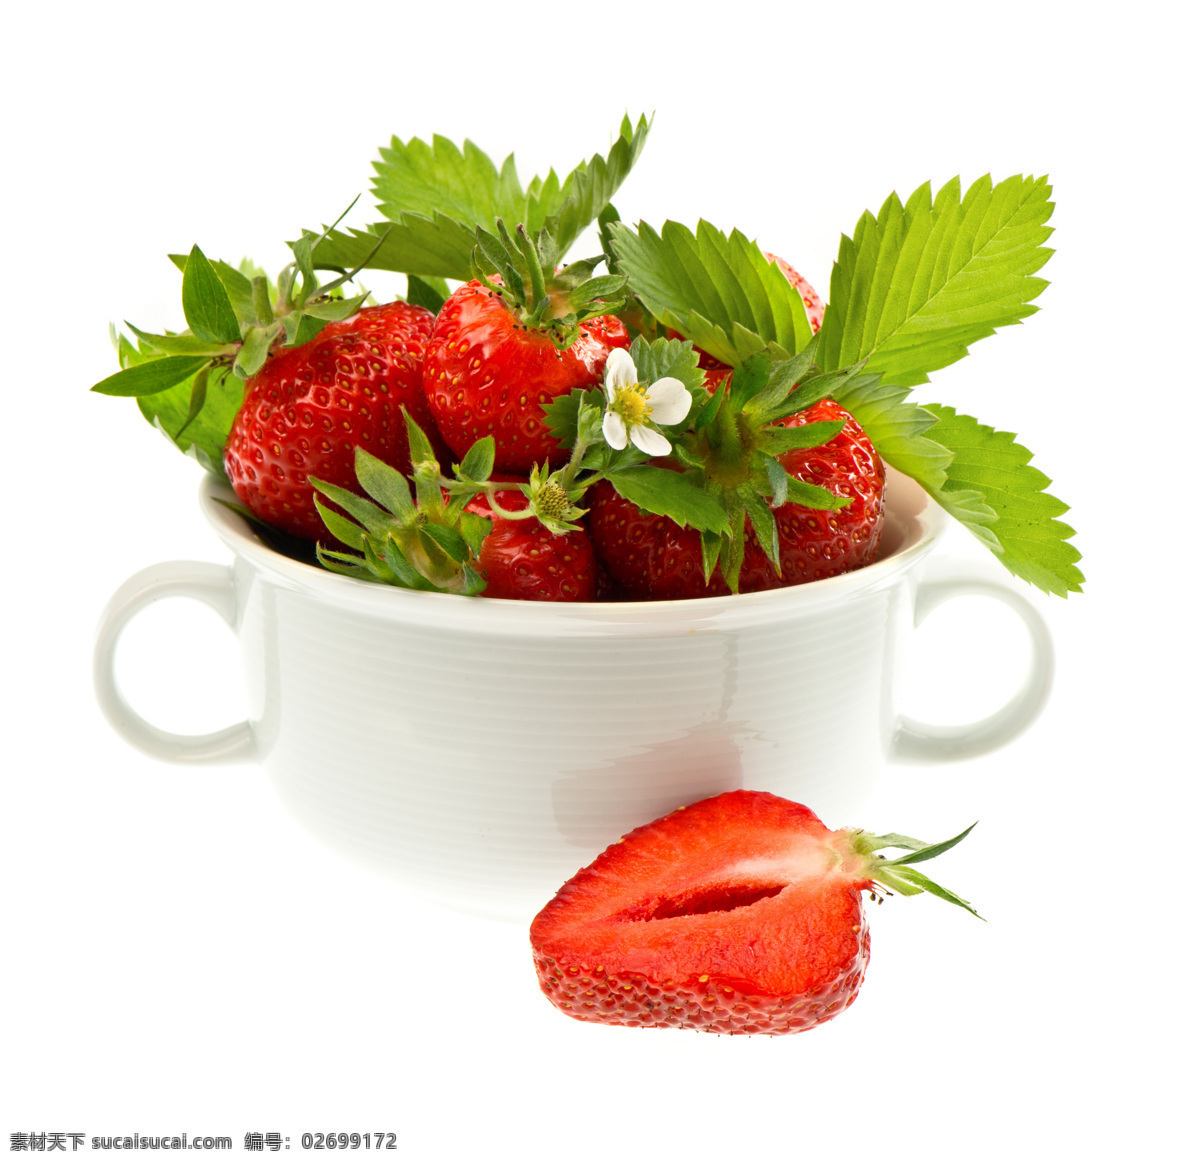 杯子 草莓 静物 生物世界 水果 新鲜水果 杯中 杯中草莓 带叶子的草莓 营养 高清水果图 白色杯子 矢量图 日常生活